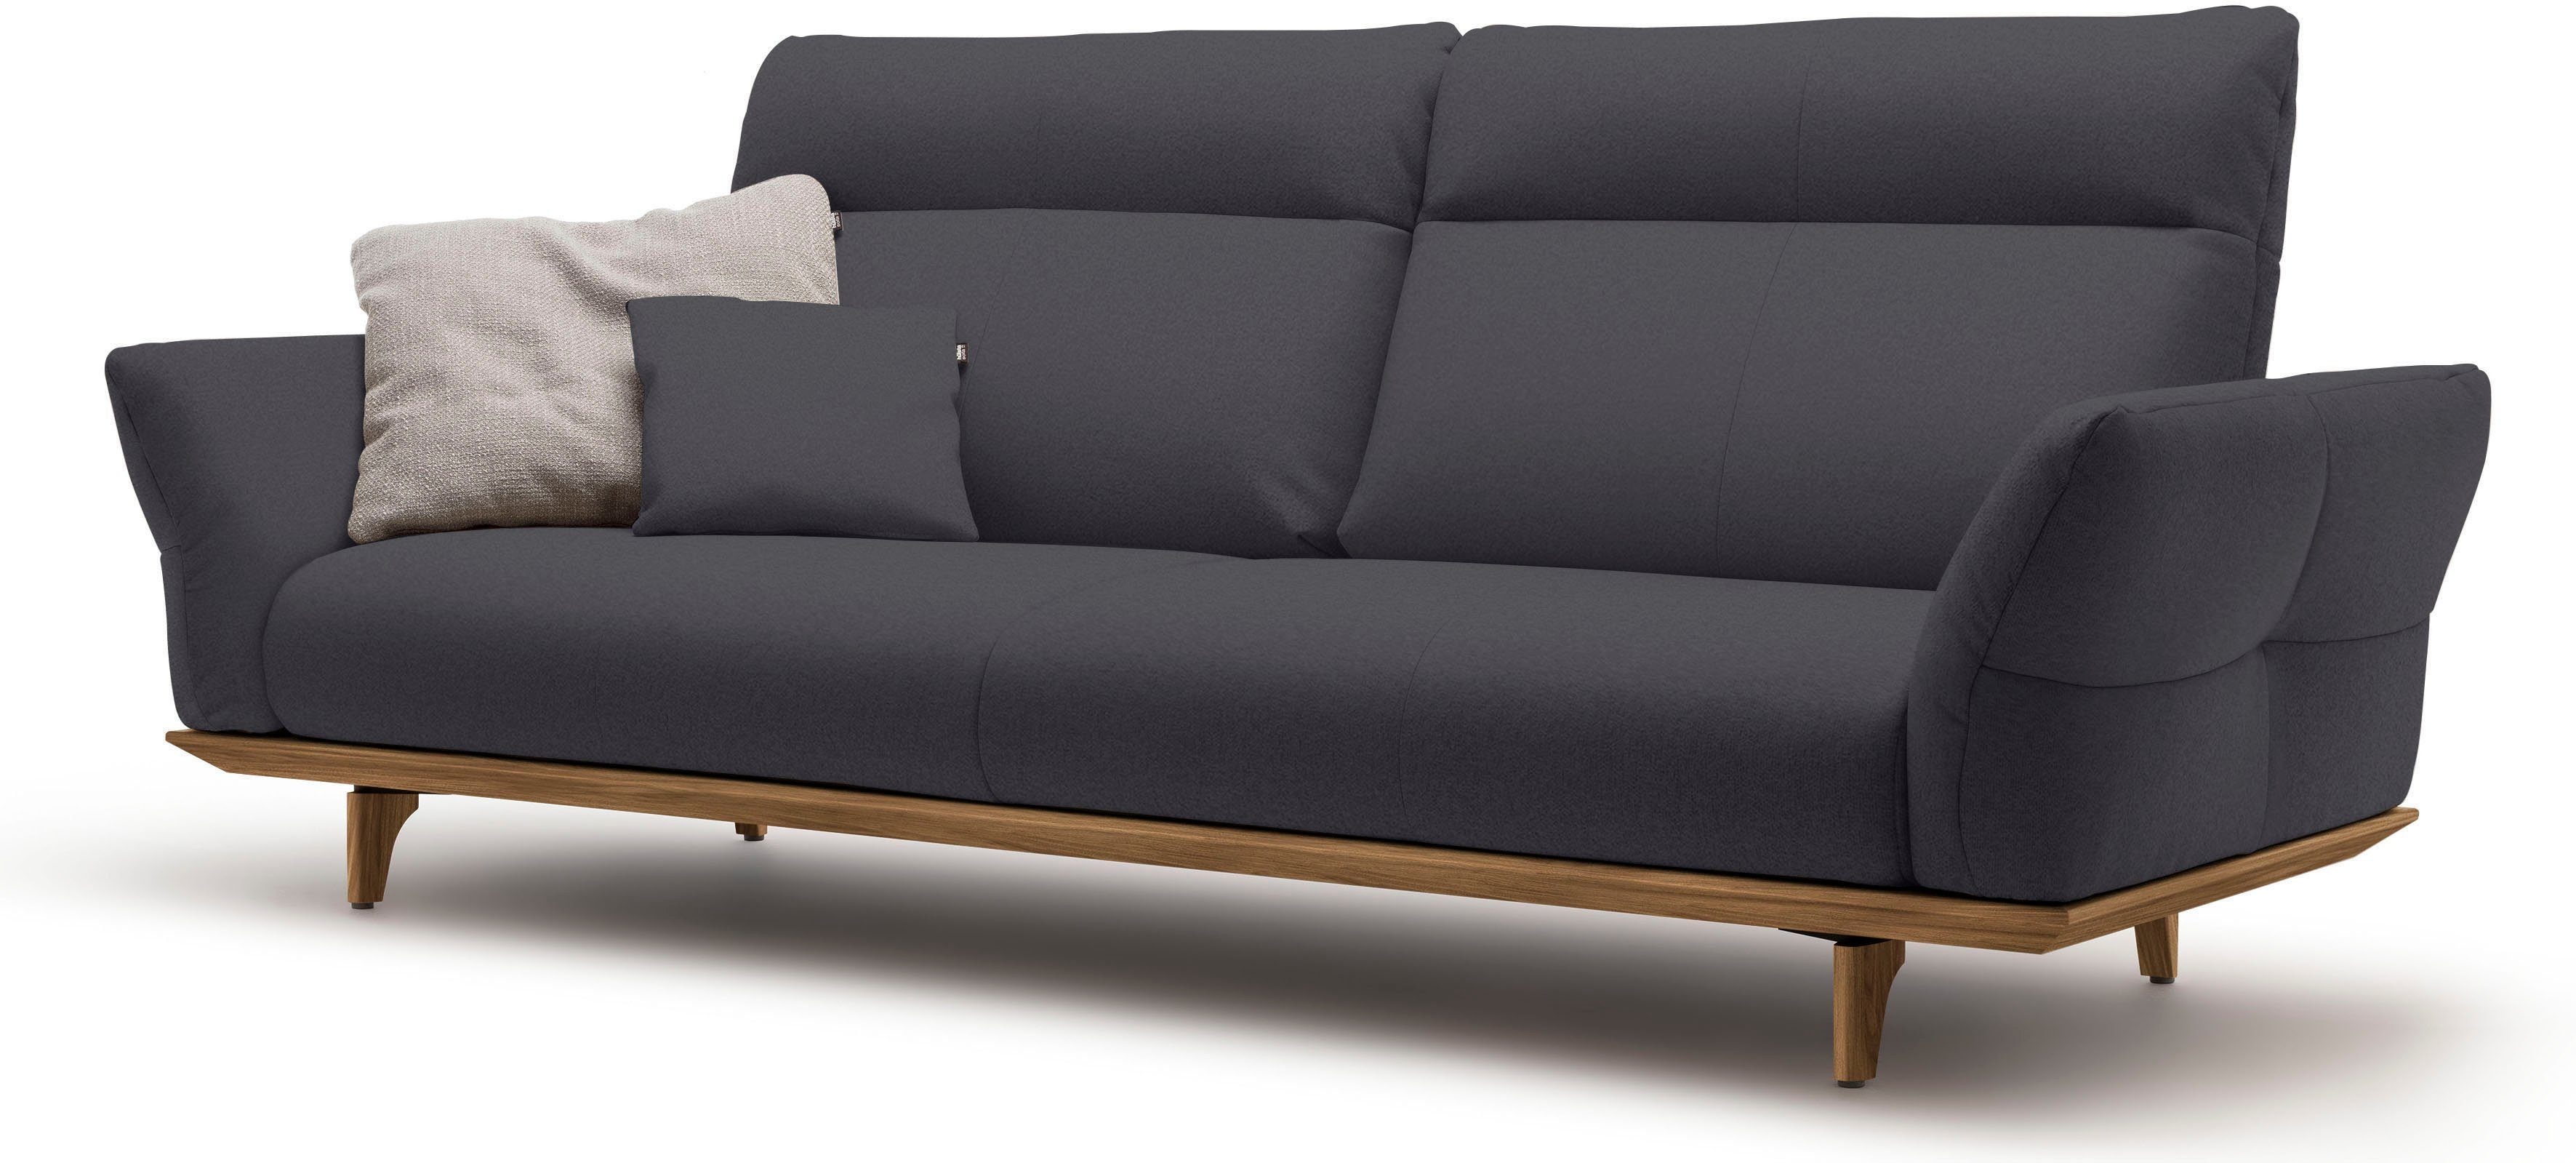 Nussbaum, Füße hs.460, Sockel sofa in und hülsta 228 cm 3,5-Sitzer Breite